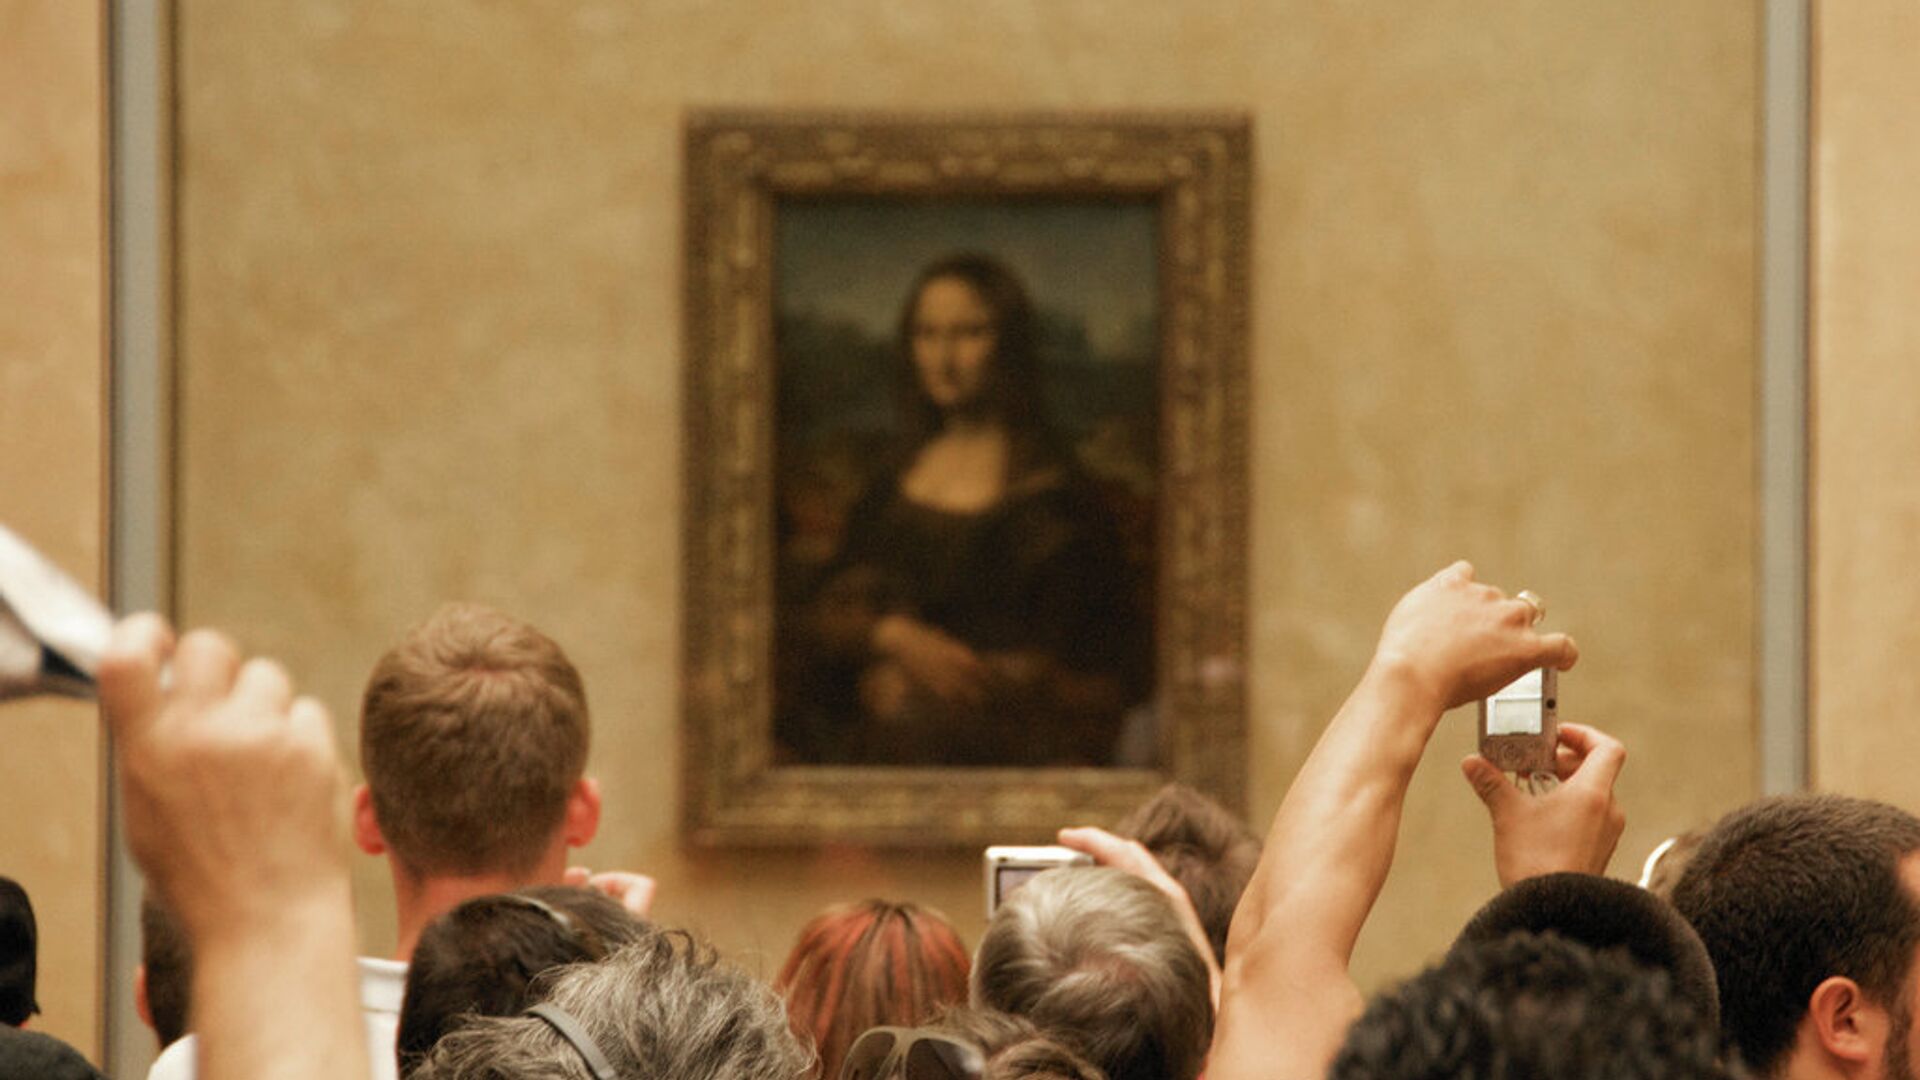 Картина Леонардо Да Винчи Портрет госпожи Лизы Джокондо (1503—1519) в крупнейшем музее мира, Лувре. Париж. Архивное фото - РИА Новости, 1920, 13.04.2018